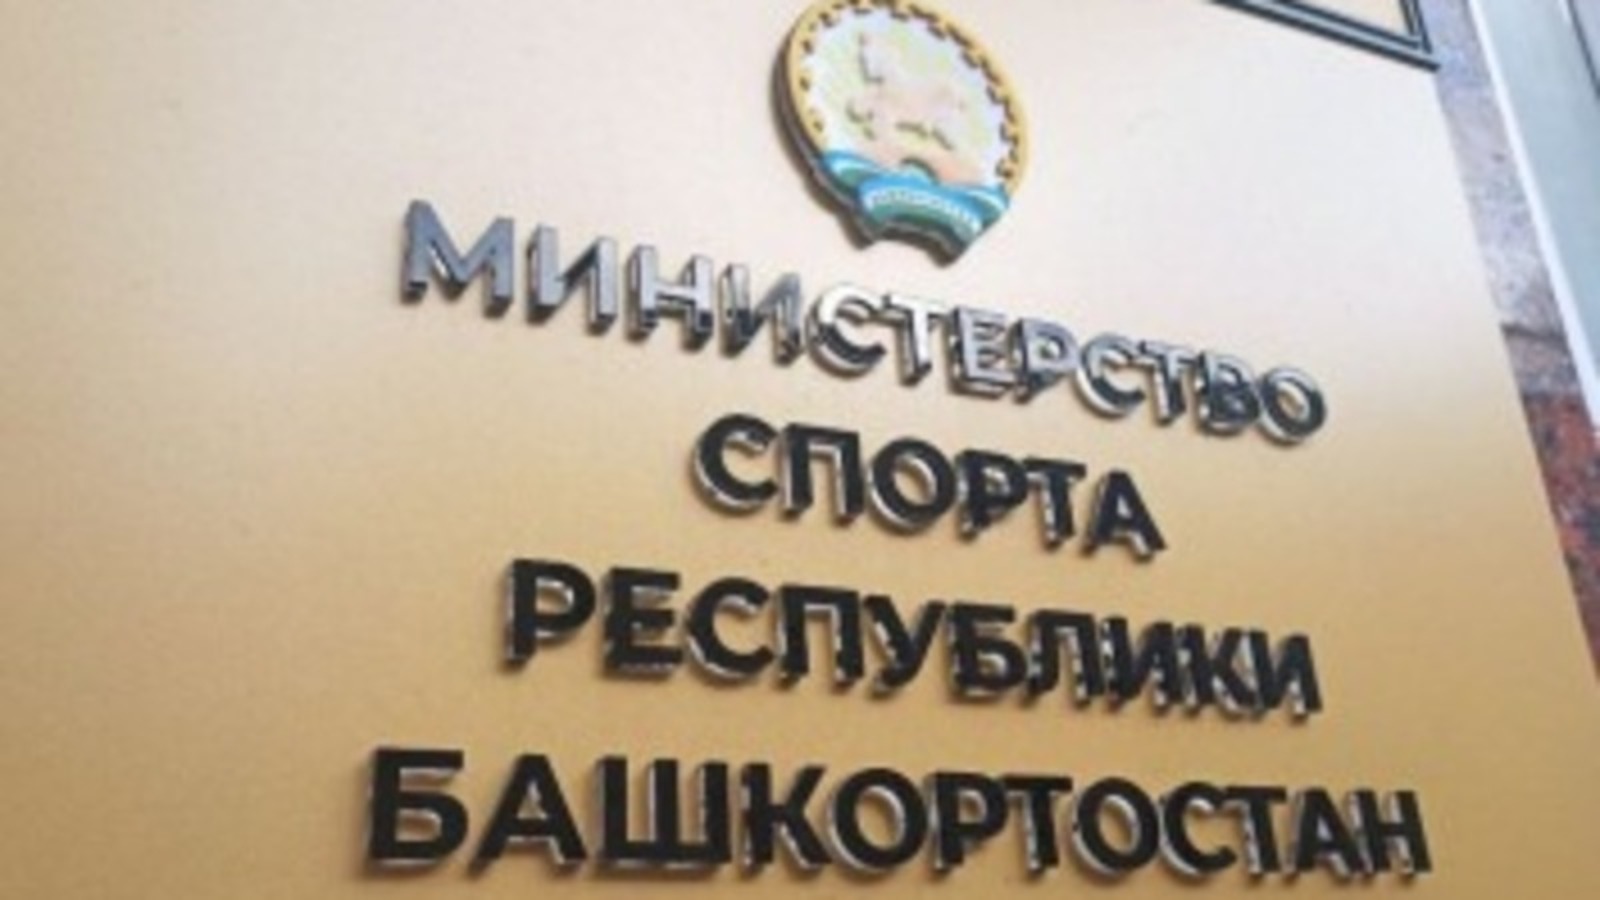 Министерство спорта Республики Башкортостан перечислило свой однодневный заработок жителям ЛНР